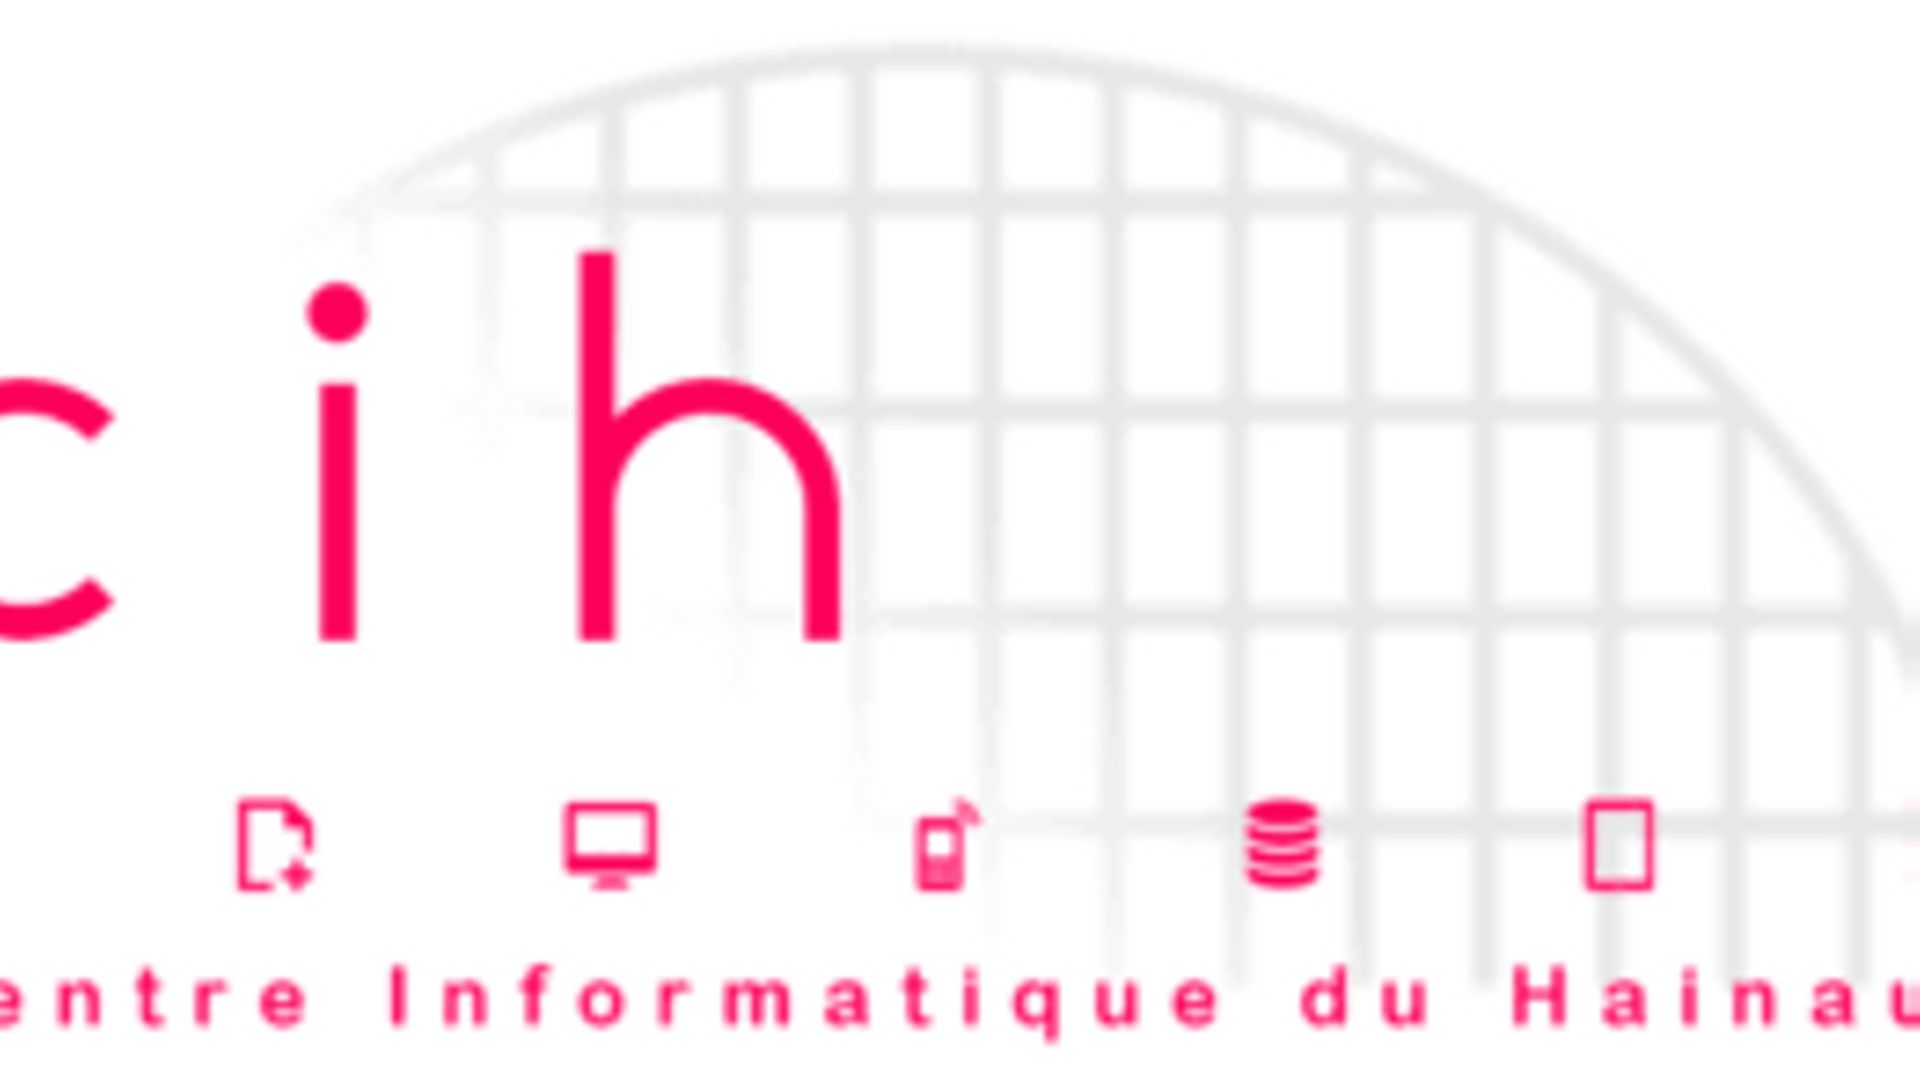 Un audit interne au sein du centre informatique du Hainaut a révélé une utilisation anormale de la carte de crédit de l’asbl.